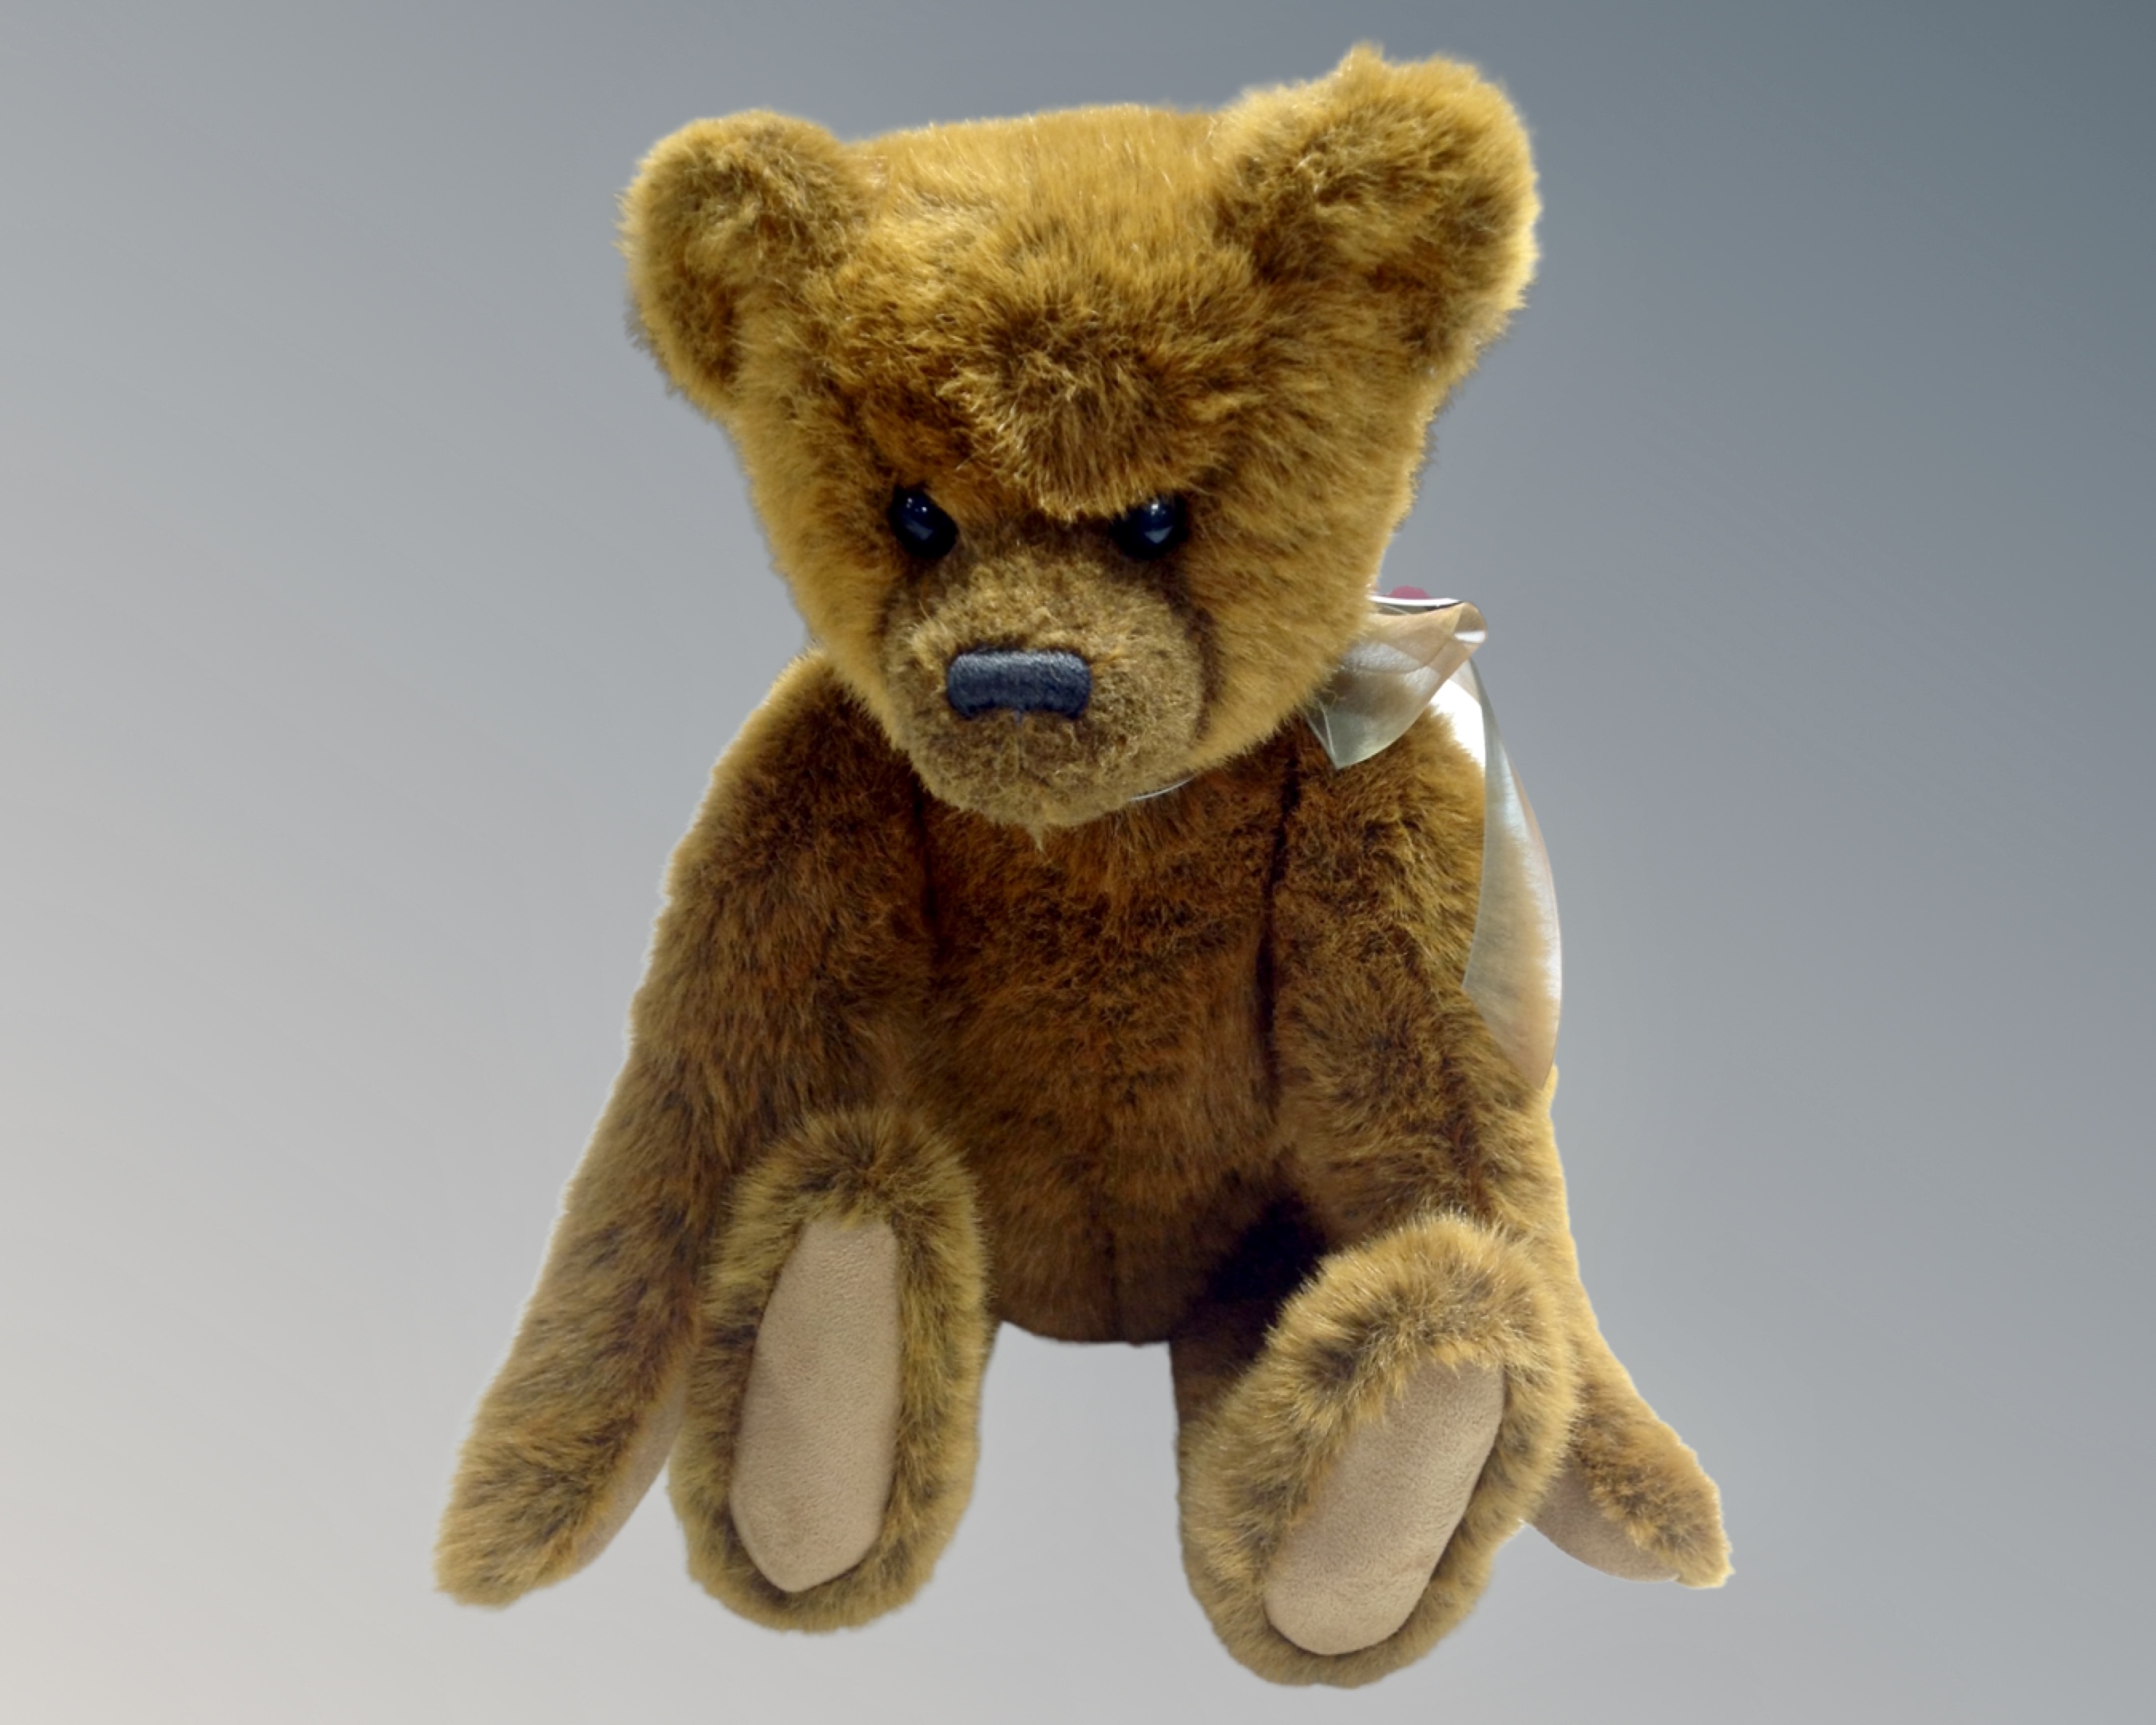 A Charlie Bear Cameron tagged teddy bear